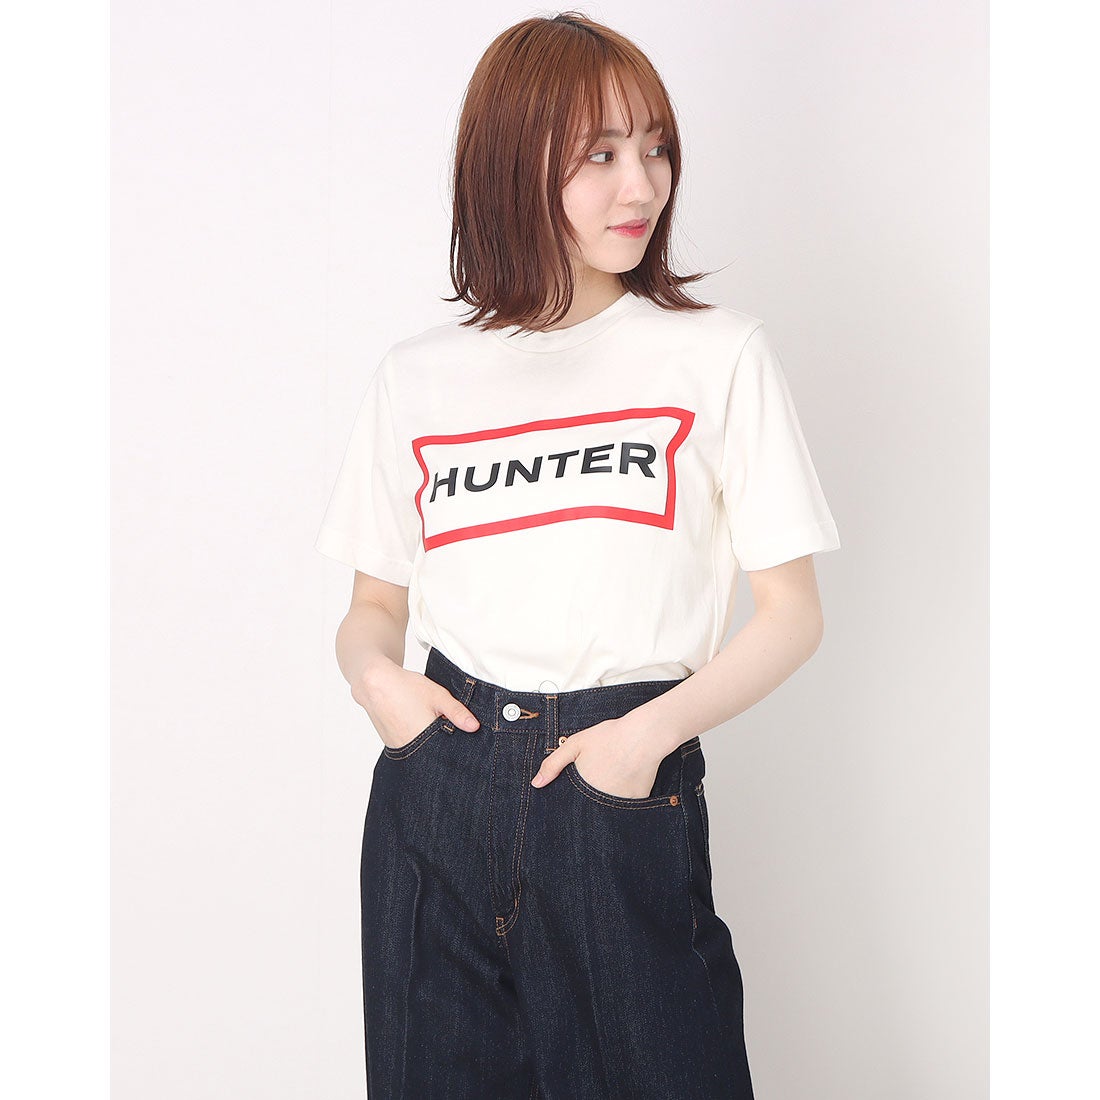 ハンター HUNTER レディース オリジナル ロゴ 新品本物 Tシャツ いつでも送料無料 LPN WRJ1075JAS